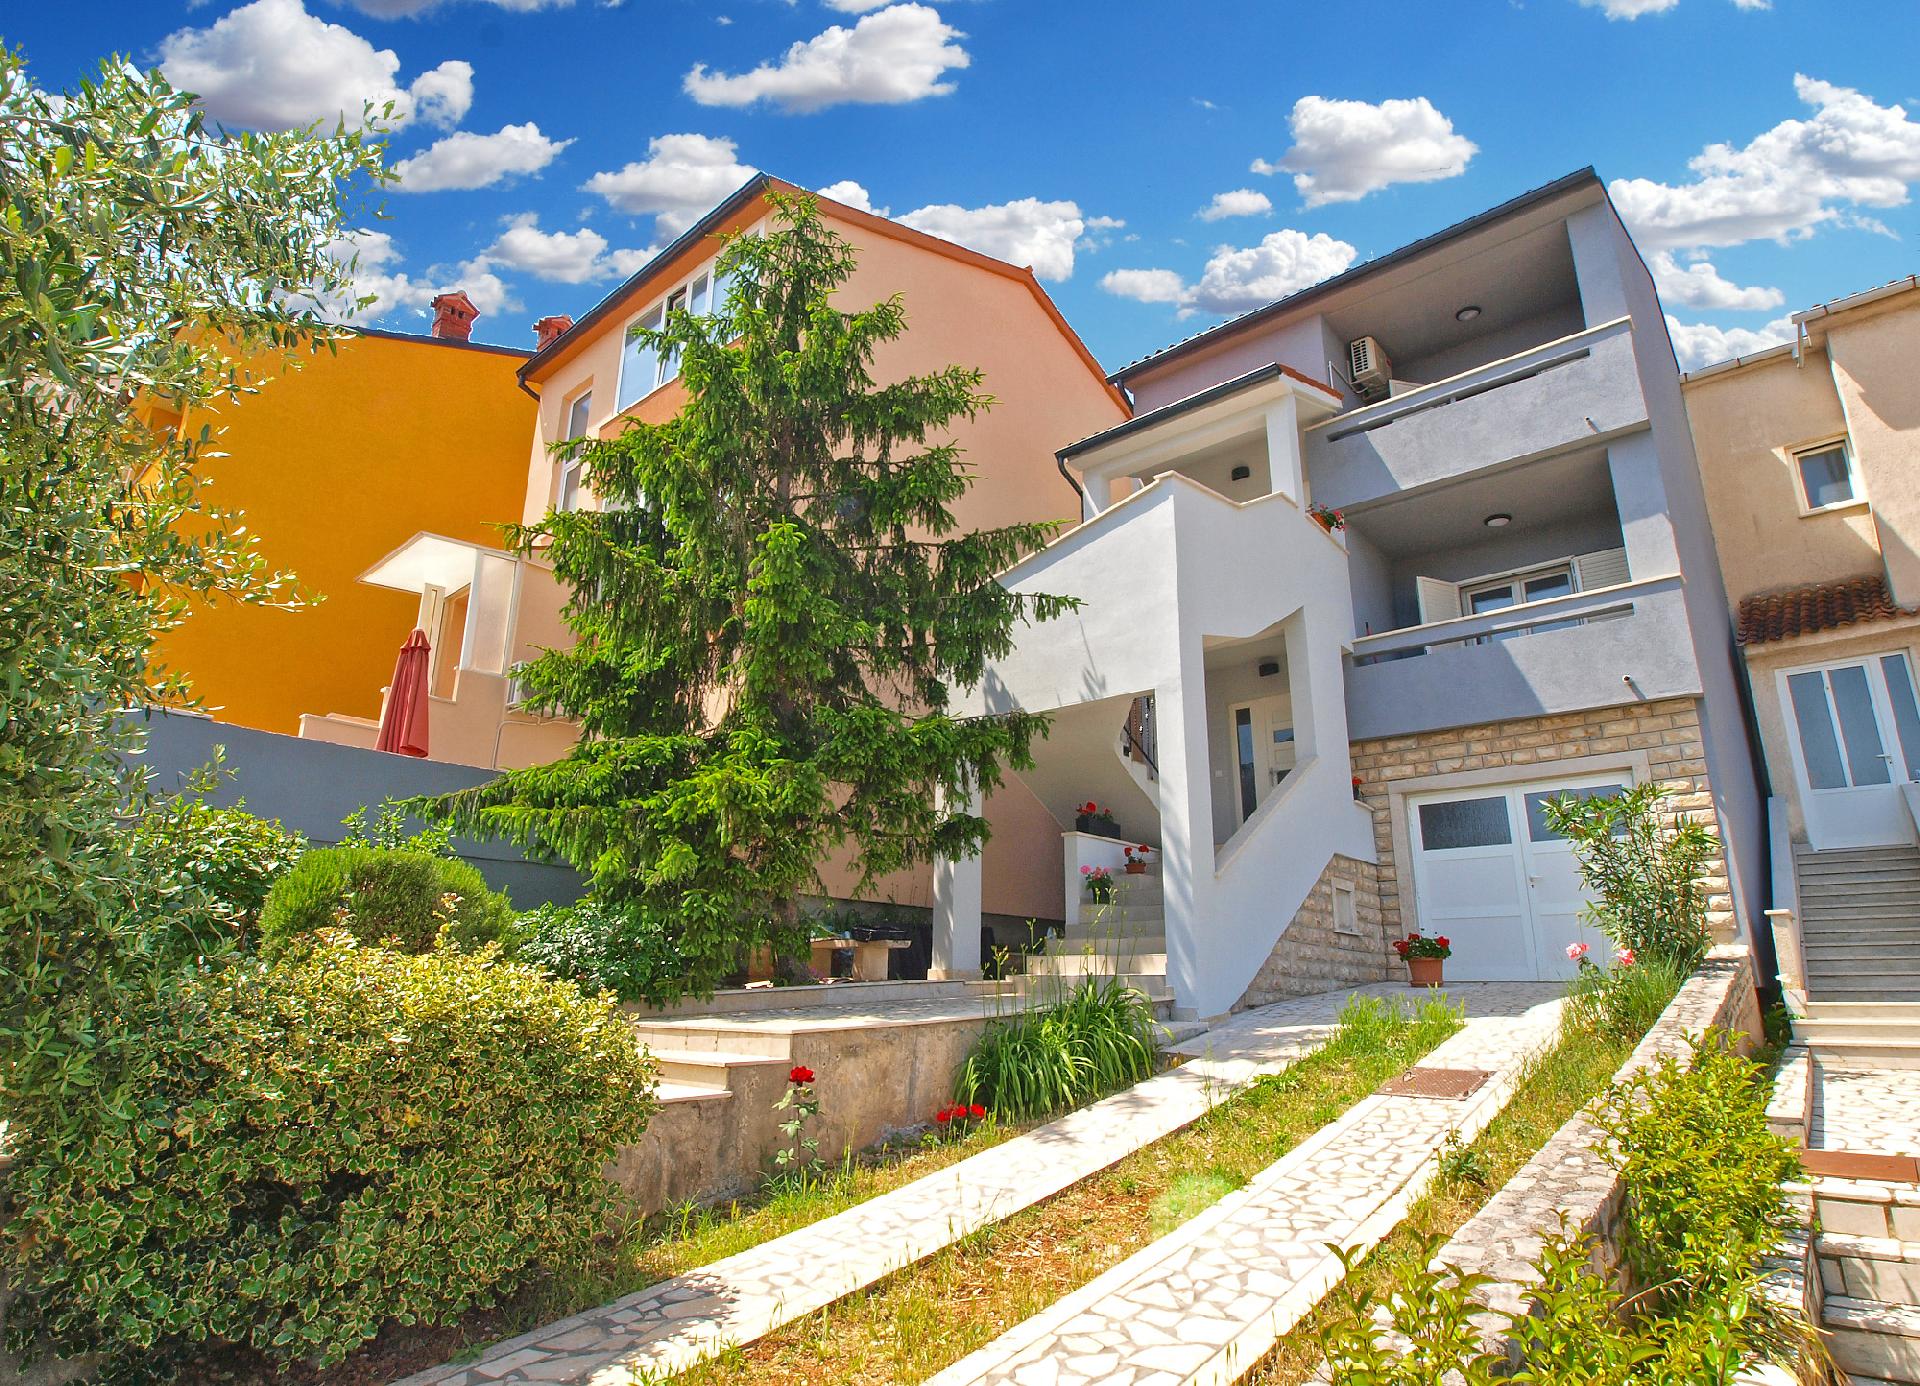 Ferienwohnung für 5 Personen ca. 65 m² i  in Kroatien